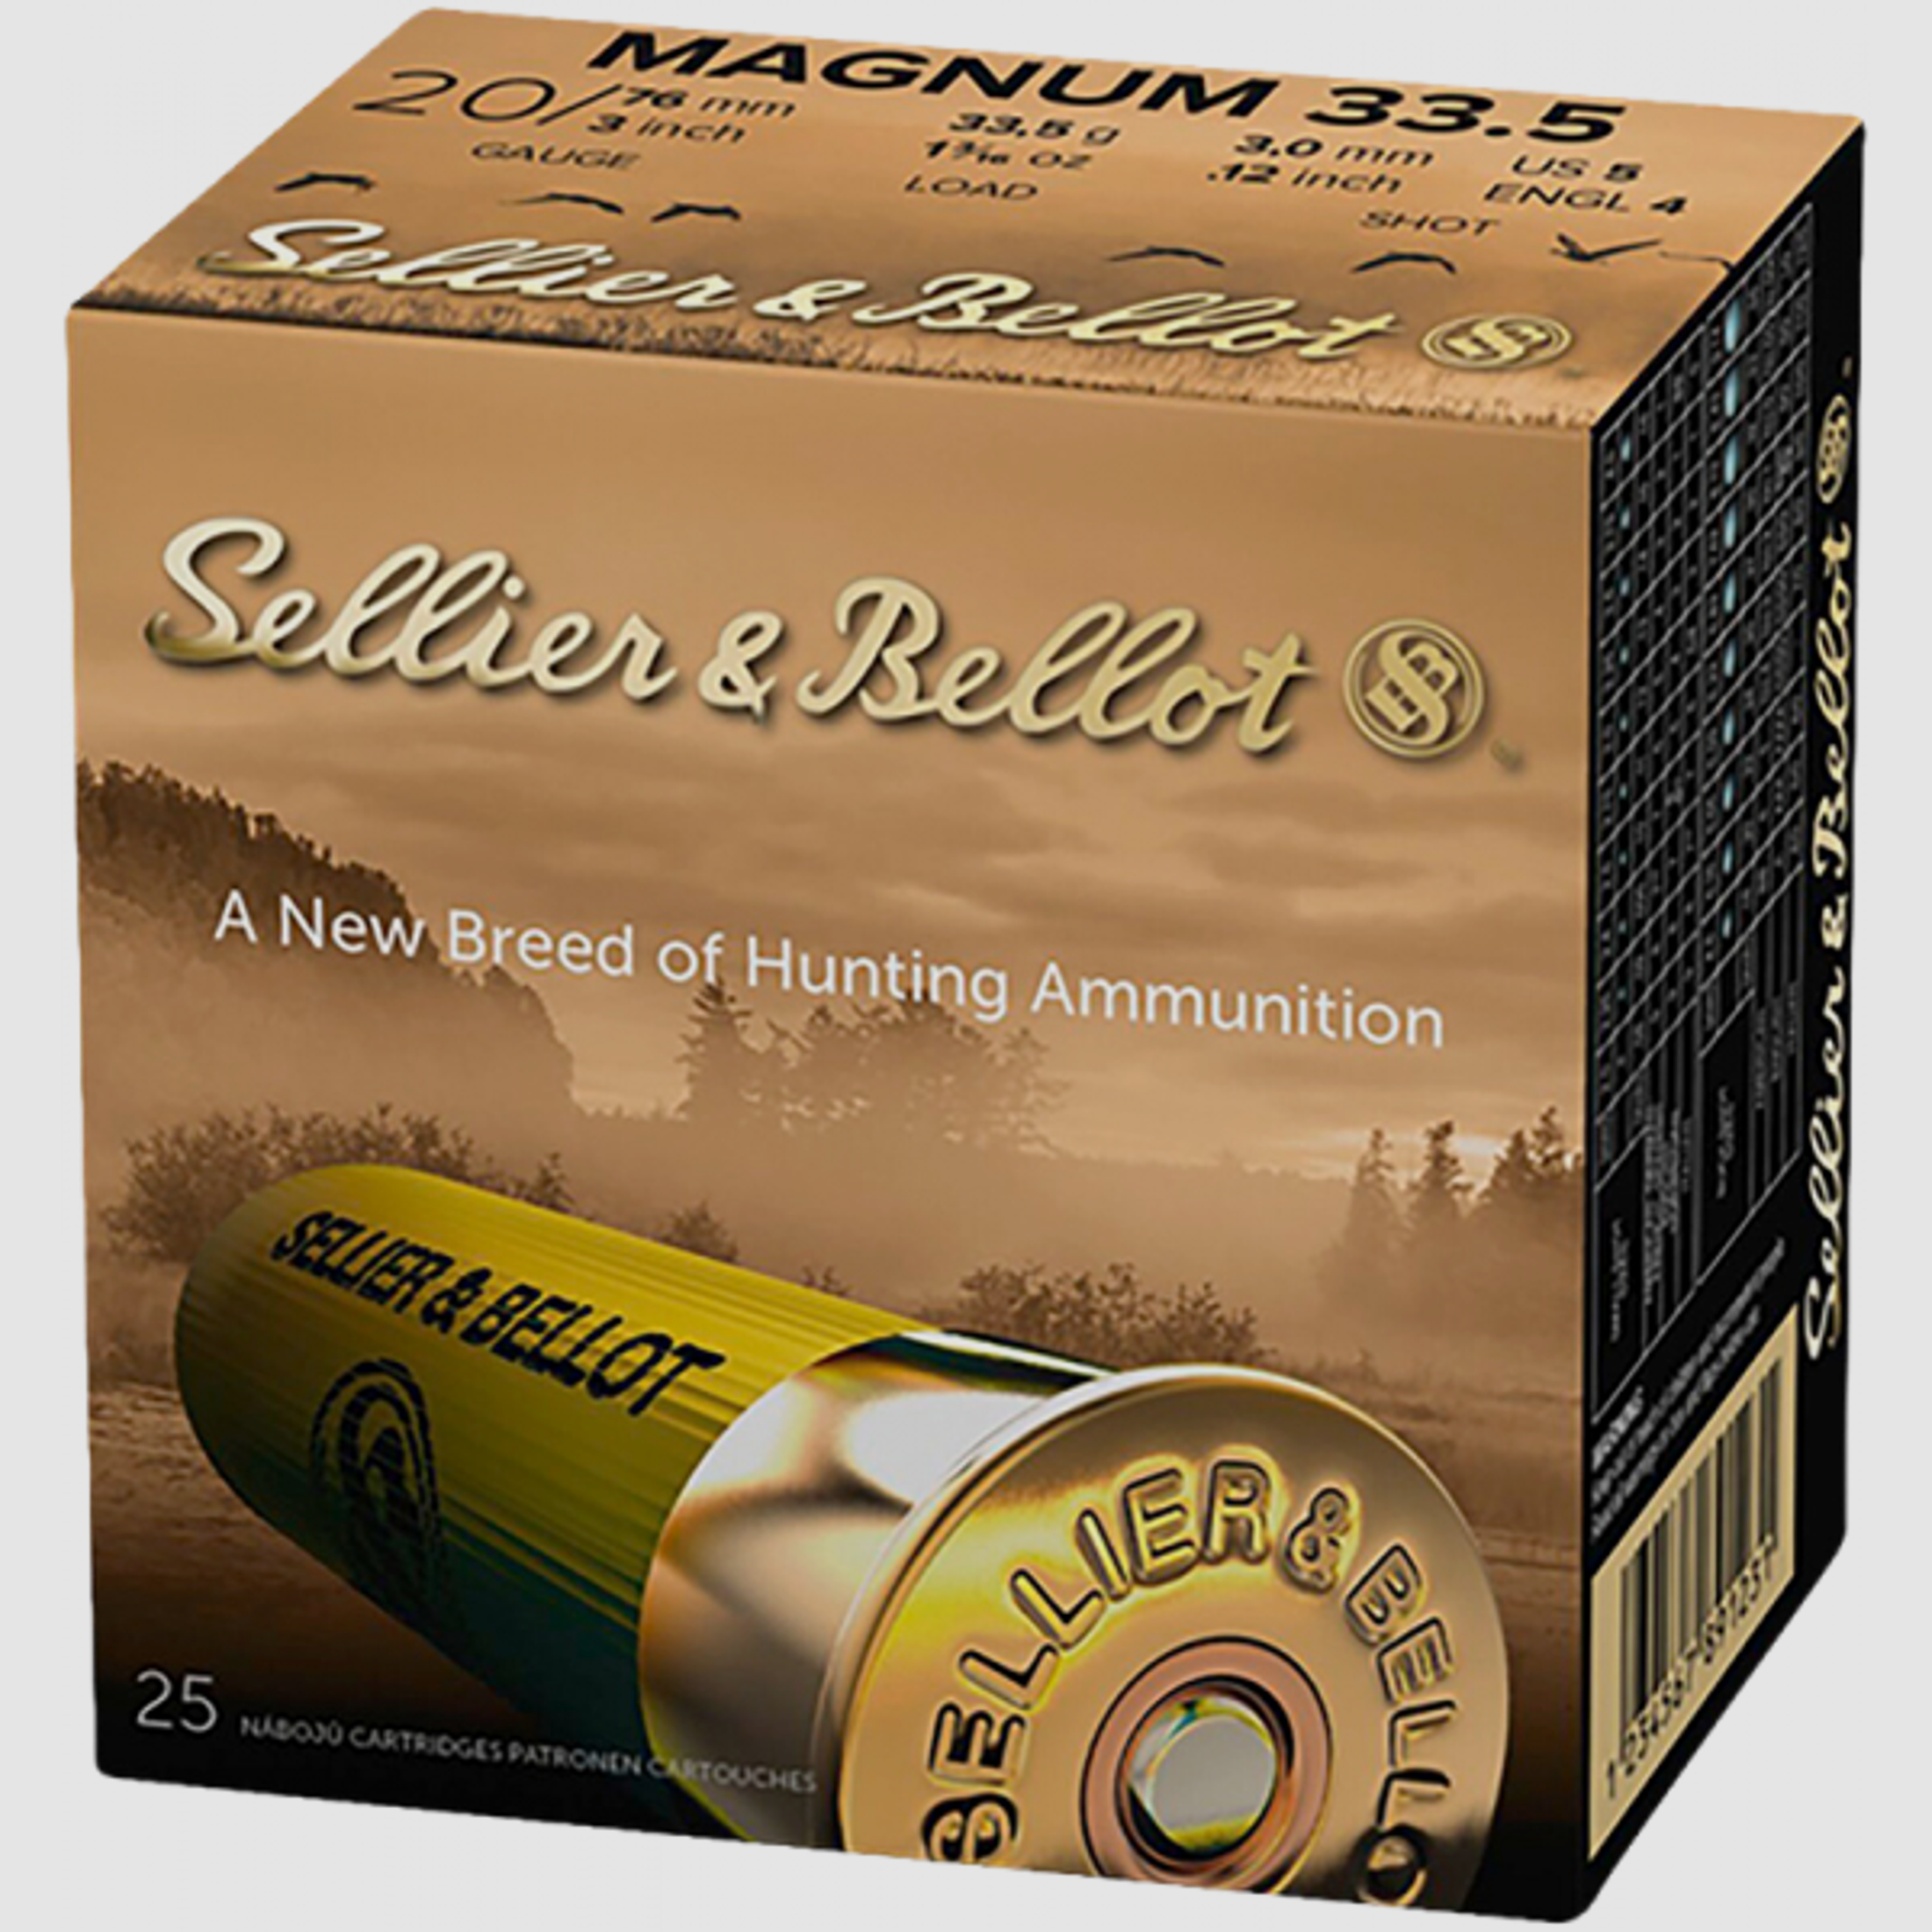 Sellier & Bellot Magnum 33.5 20/76 33,5 gr Schrotpatronen